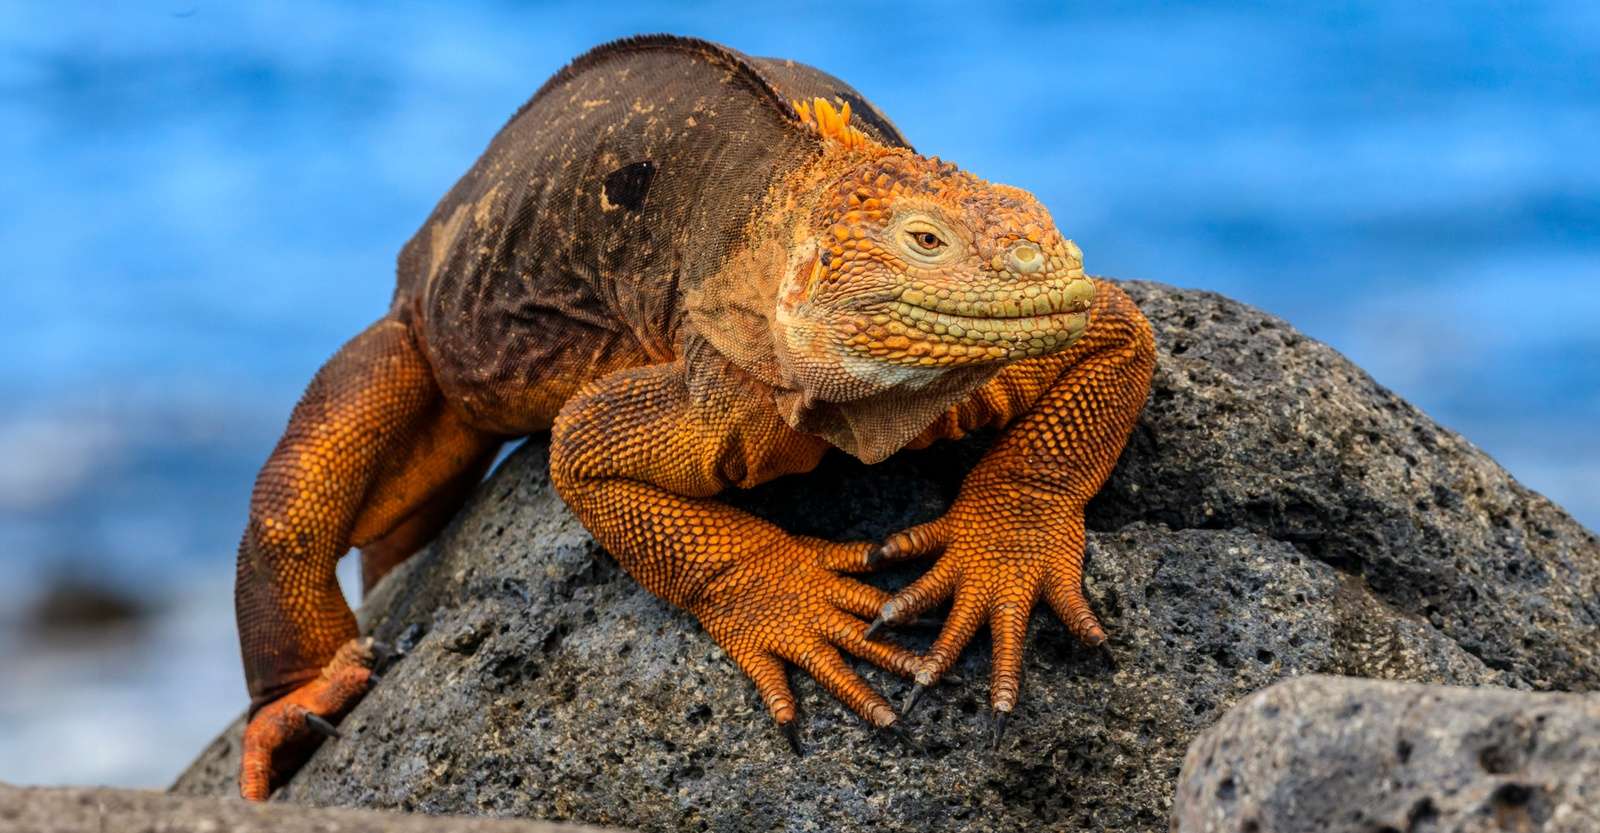 Galapagos land iguana, North Seymour Island, Galapagos, Ecuador.